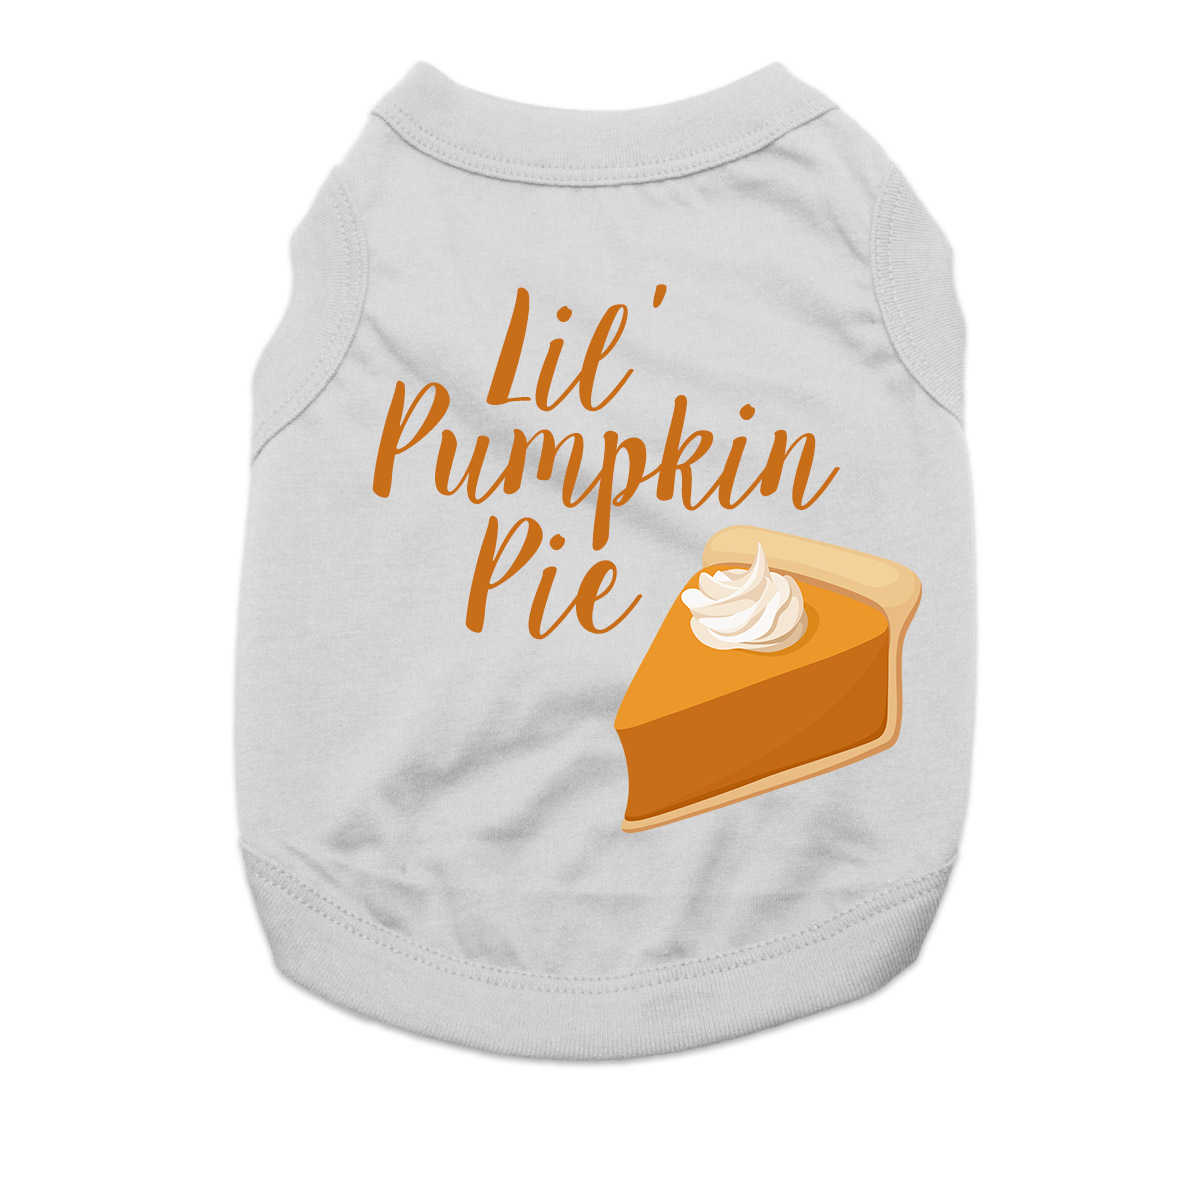 Lil' Pumpkin Pie Dog Shirt - Gray